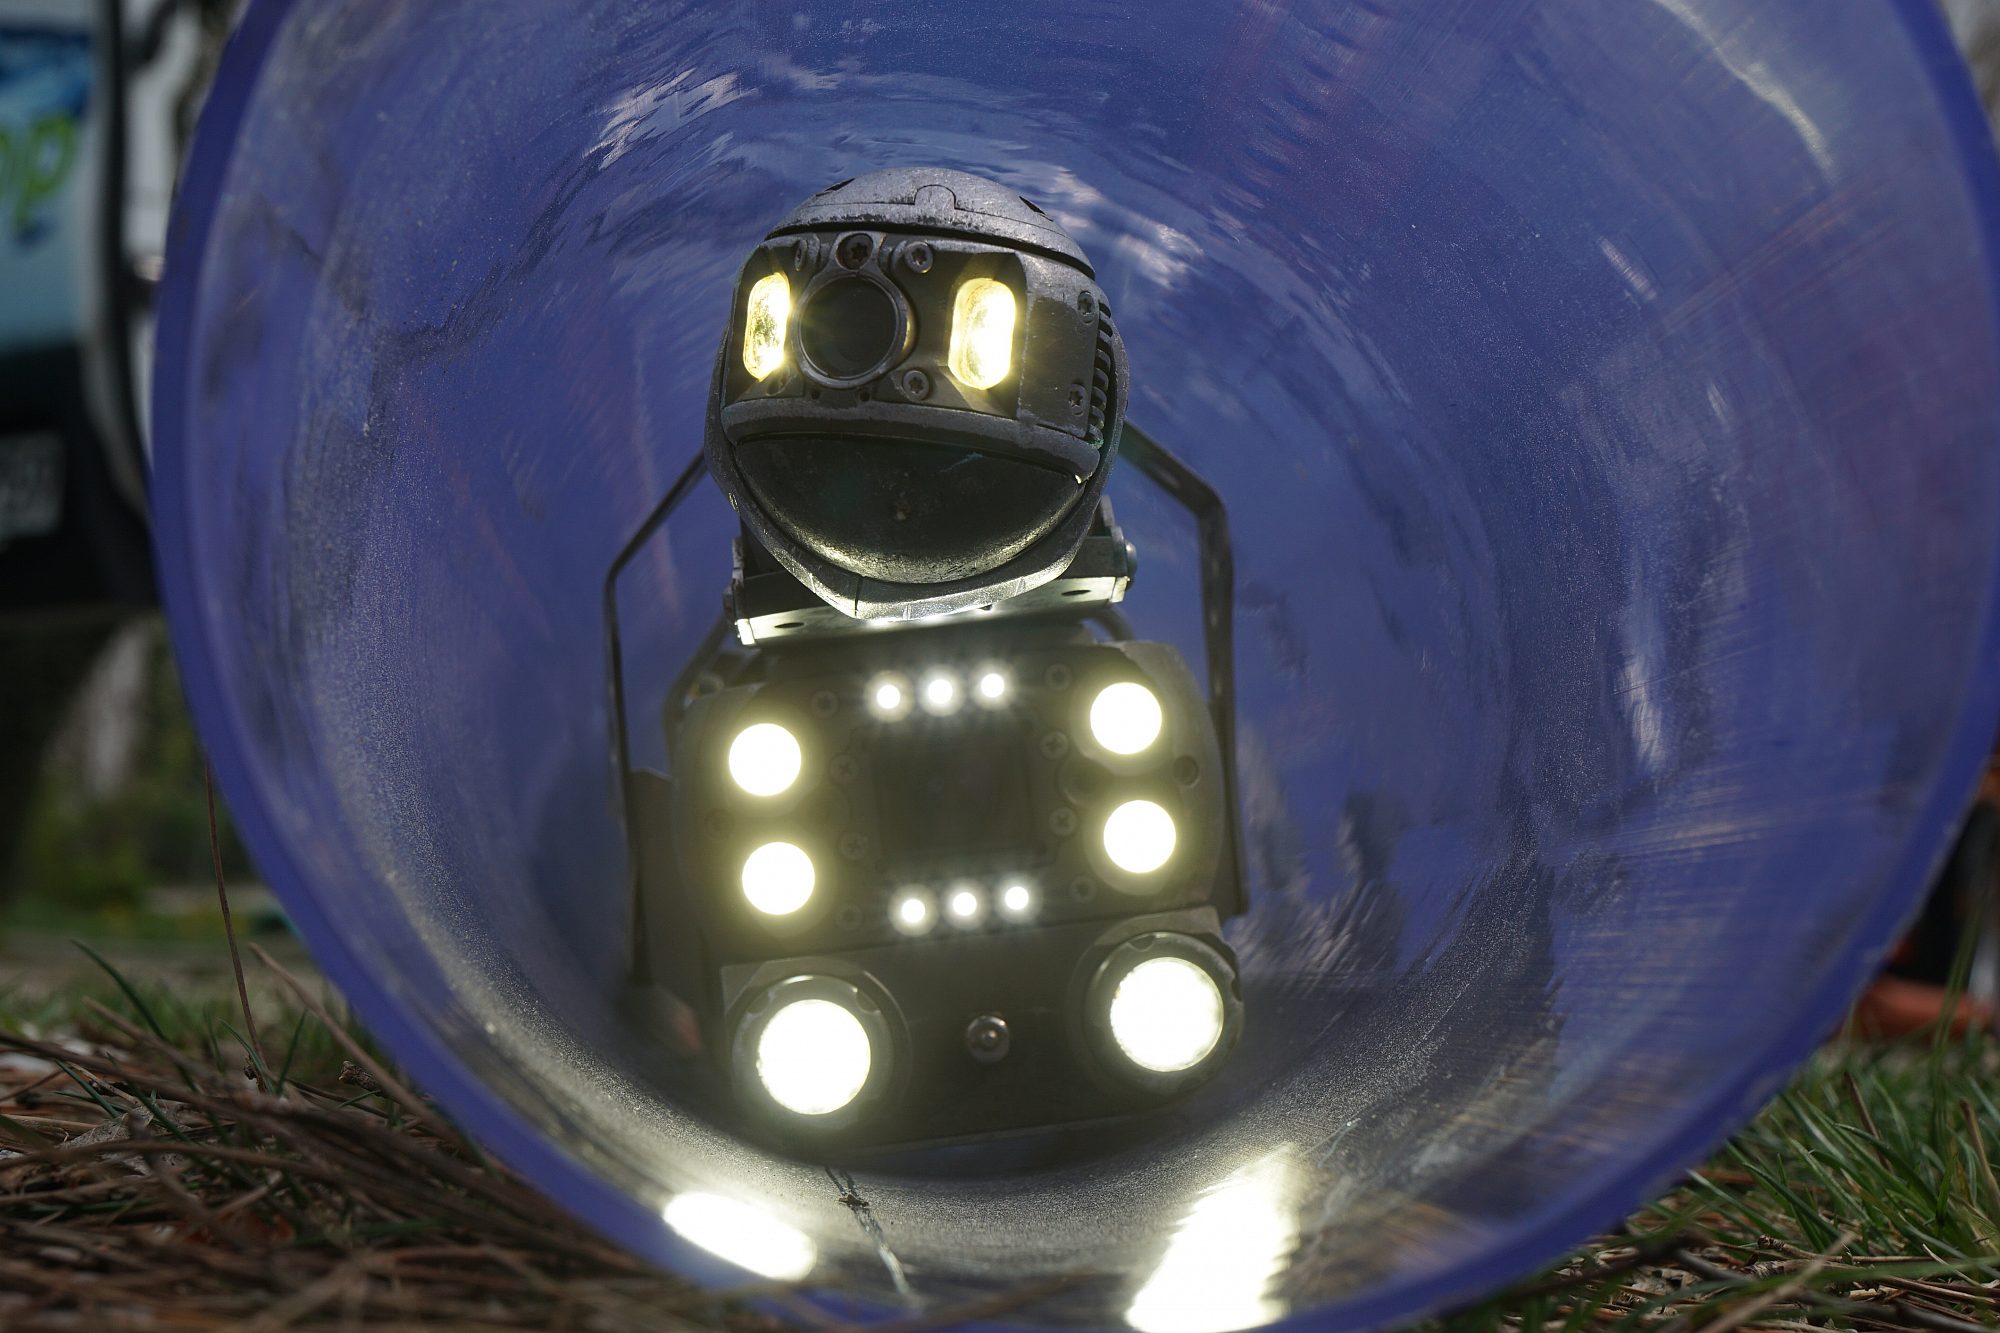 Der Einblick in ein Rohr zeigt einen Kanalroboter mit vielen Lampen, der gerade auf den Betrachter zufährt.